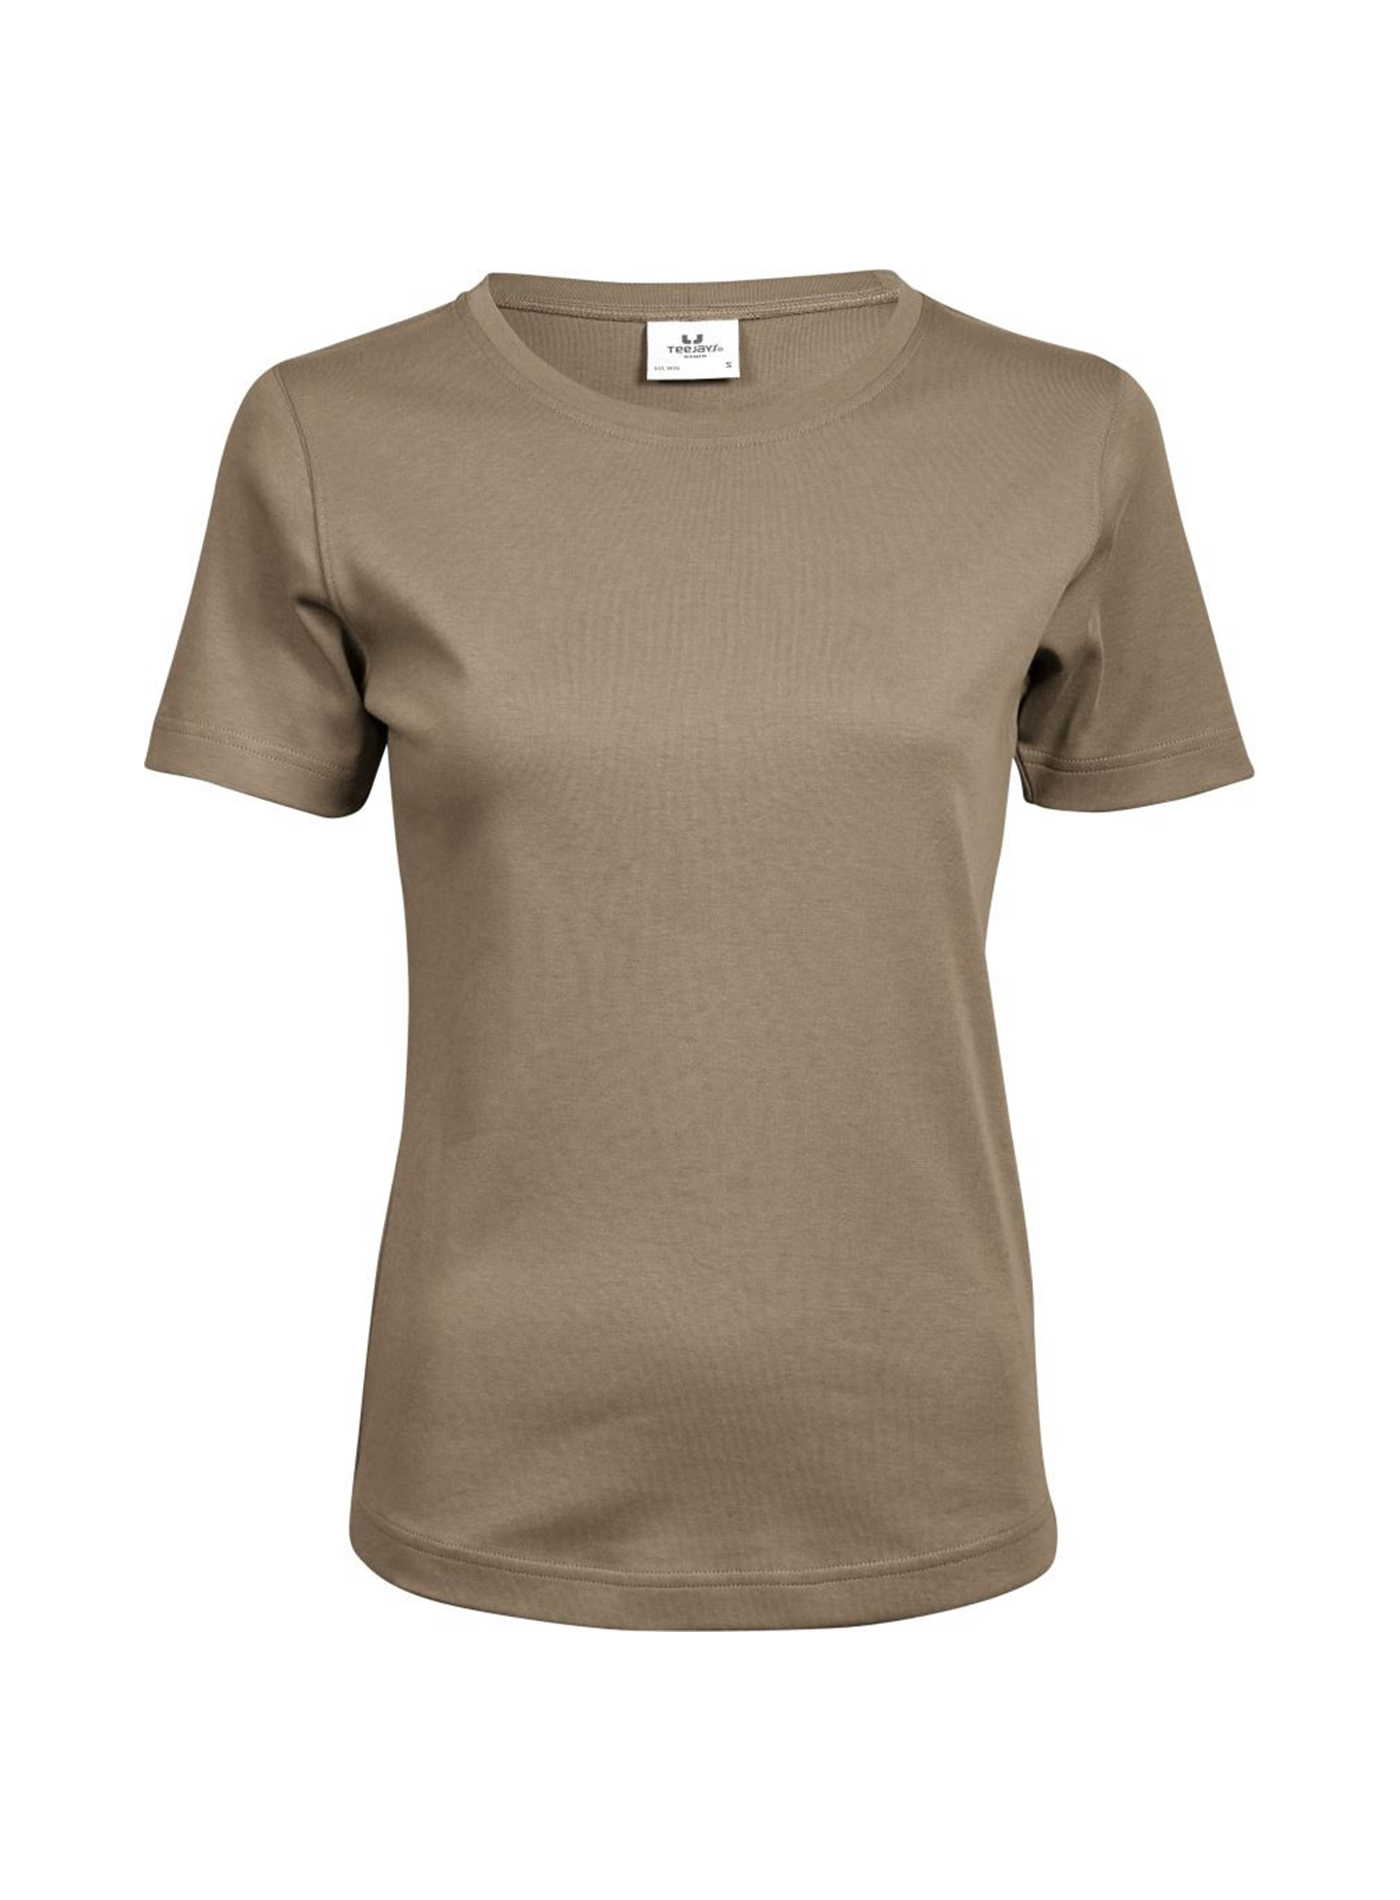 Silné bavlněné tričko Tee Jays Interlock - Béžově hnědá XL